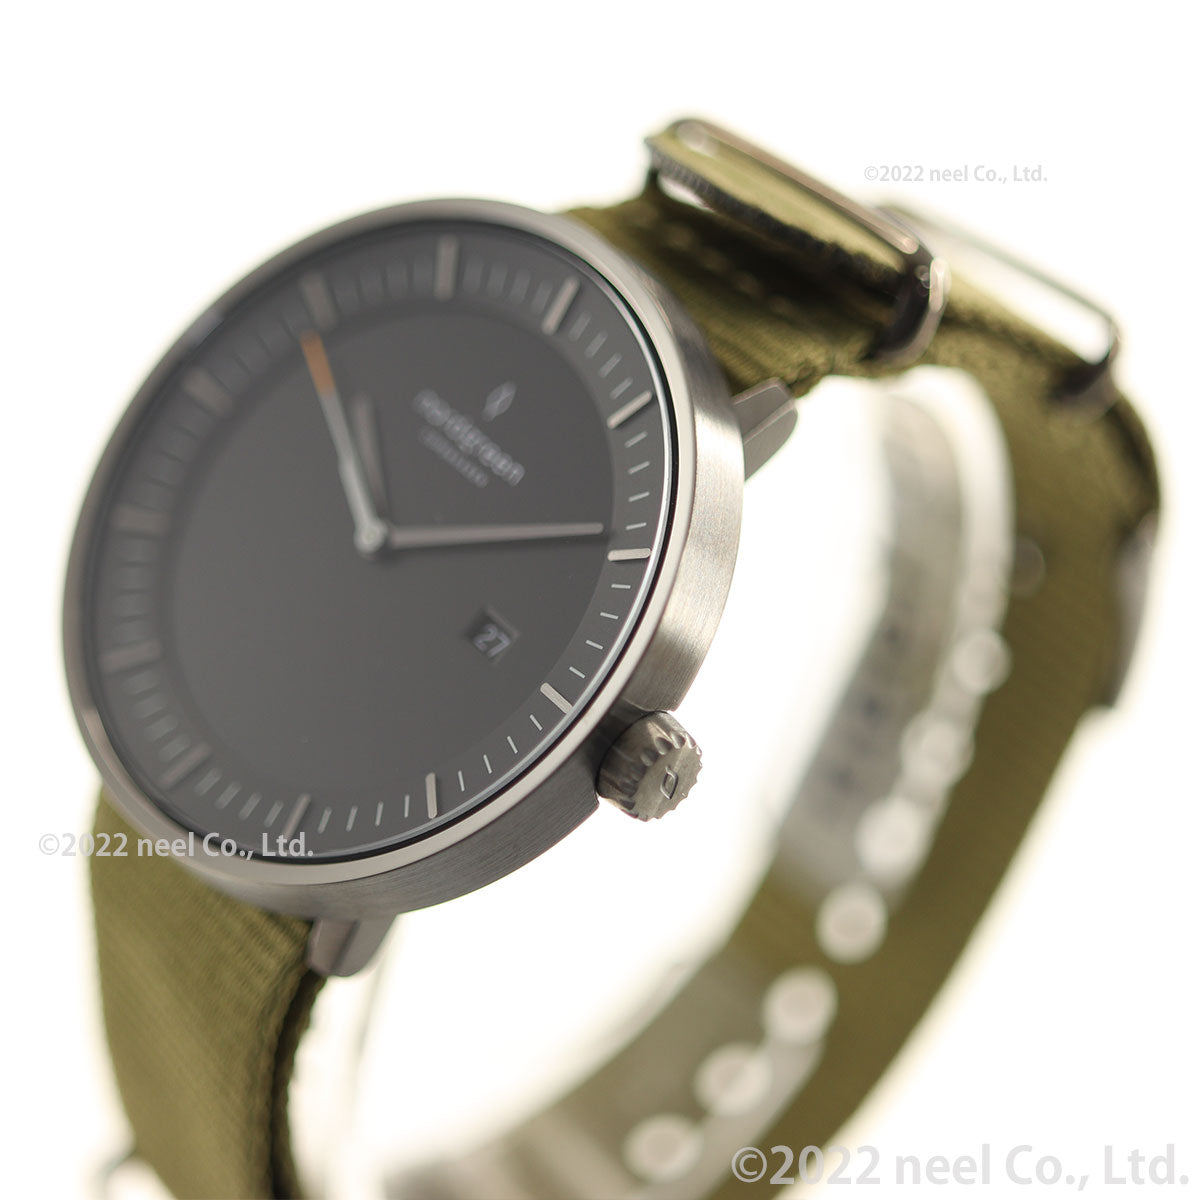 ノードグリーン nordgreen 腕時計 メンズ PH40GMNYAGBL Philosopher フィロソファー 40mm 北欧デザイン ブラック